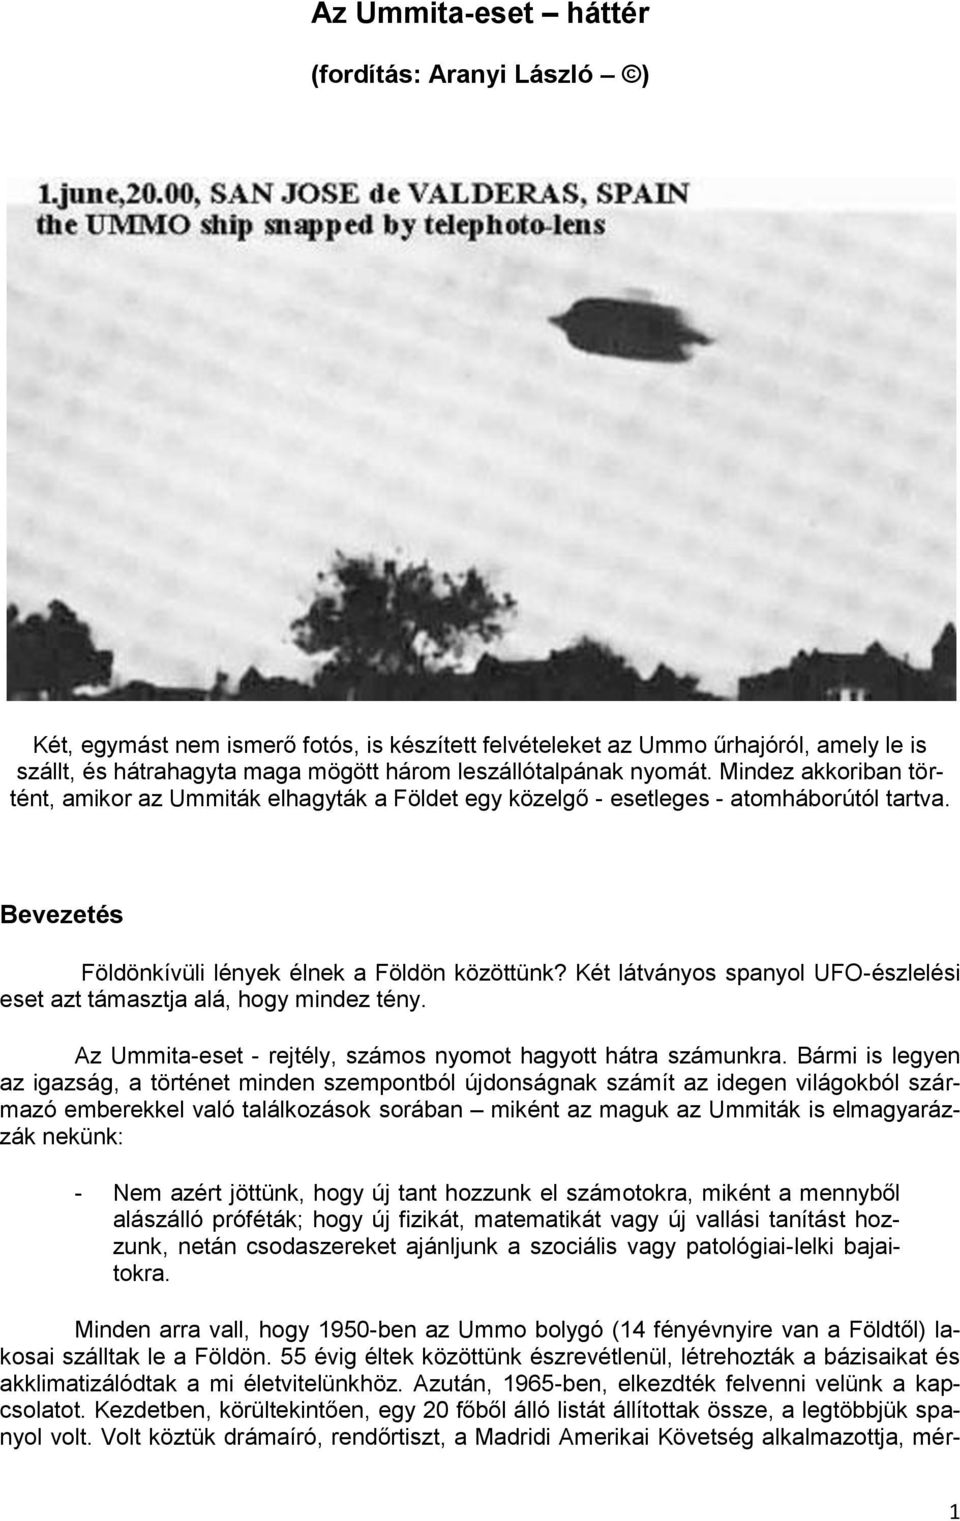 Két látványos spanyol UFO-észlelési eset azt támasztja alá, hogy mindez tény. Az Ummita-eset - rejtély, számos nyomot hagyott hátra számunkra.